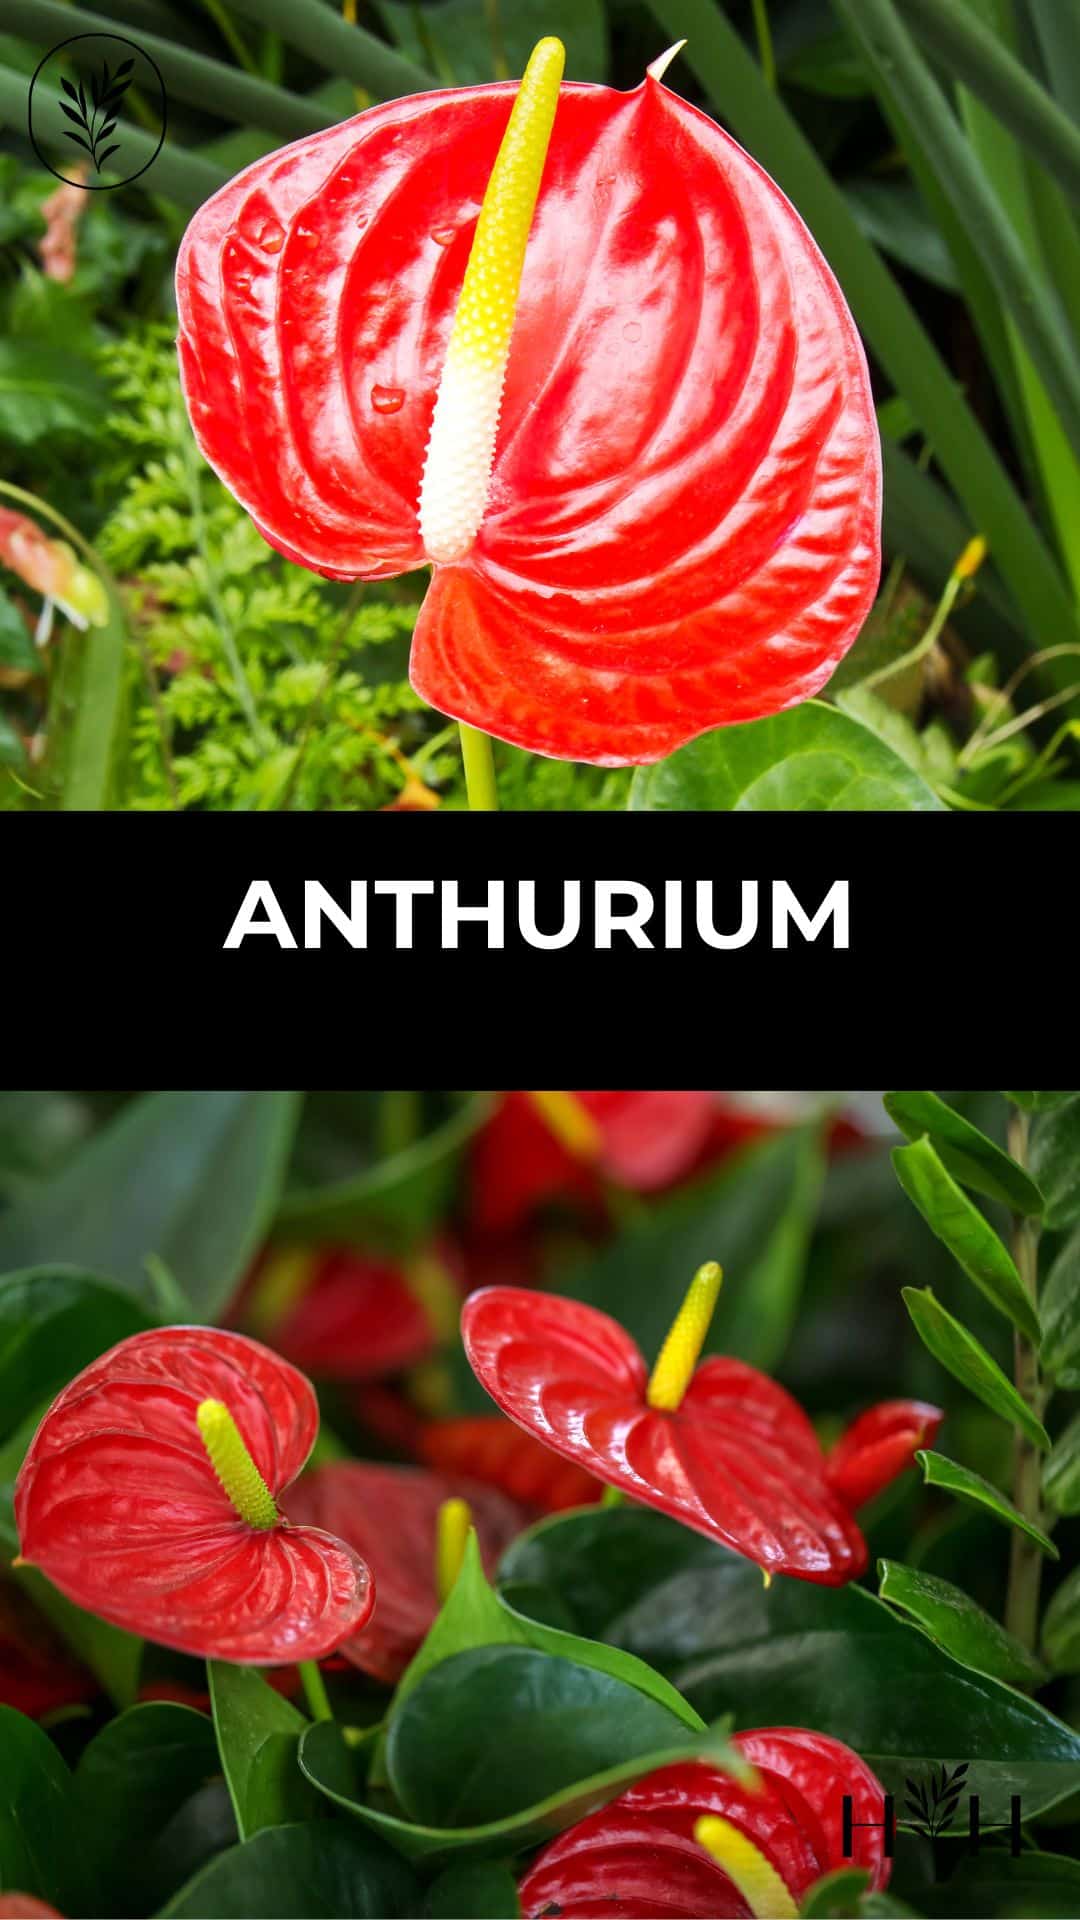 Anthurium via @home4theharvest